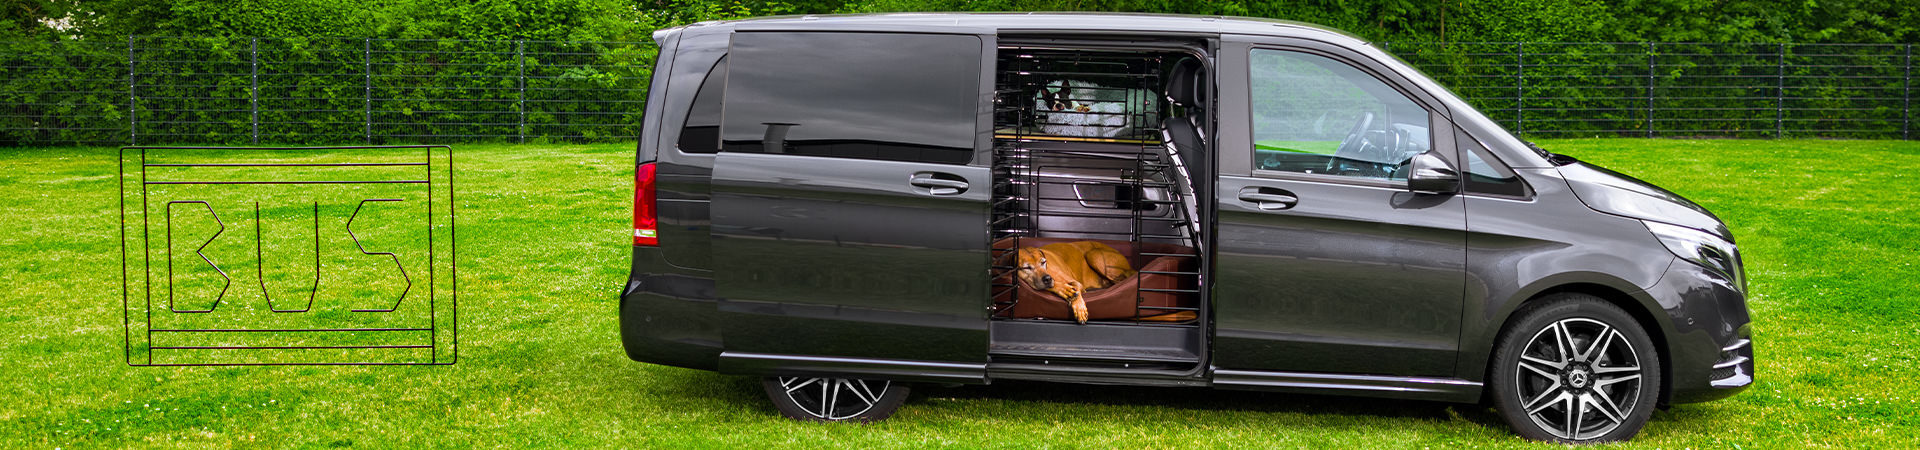 Van mit Hundeschutzgitter im Innenraum auf einer Wiese